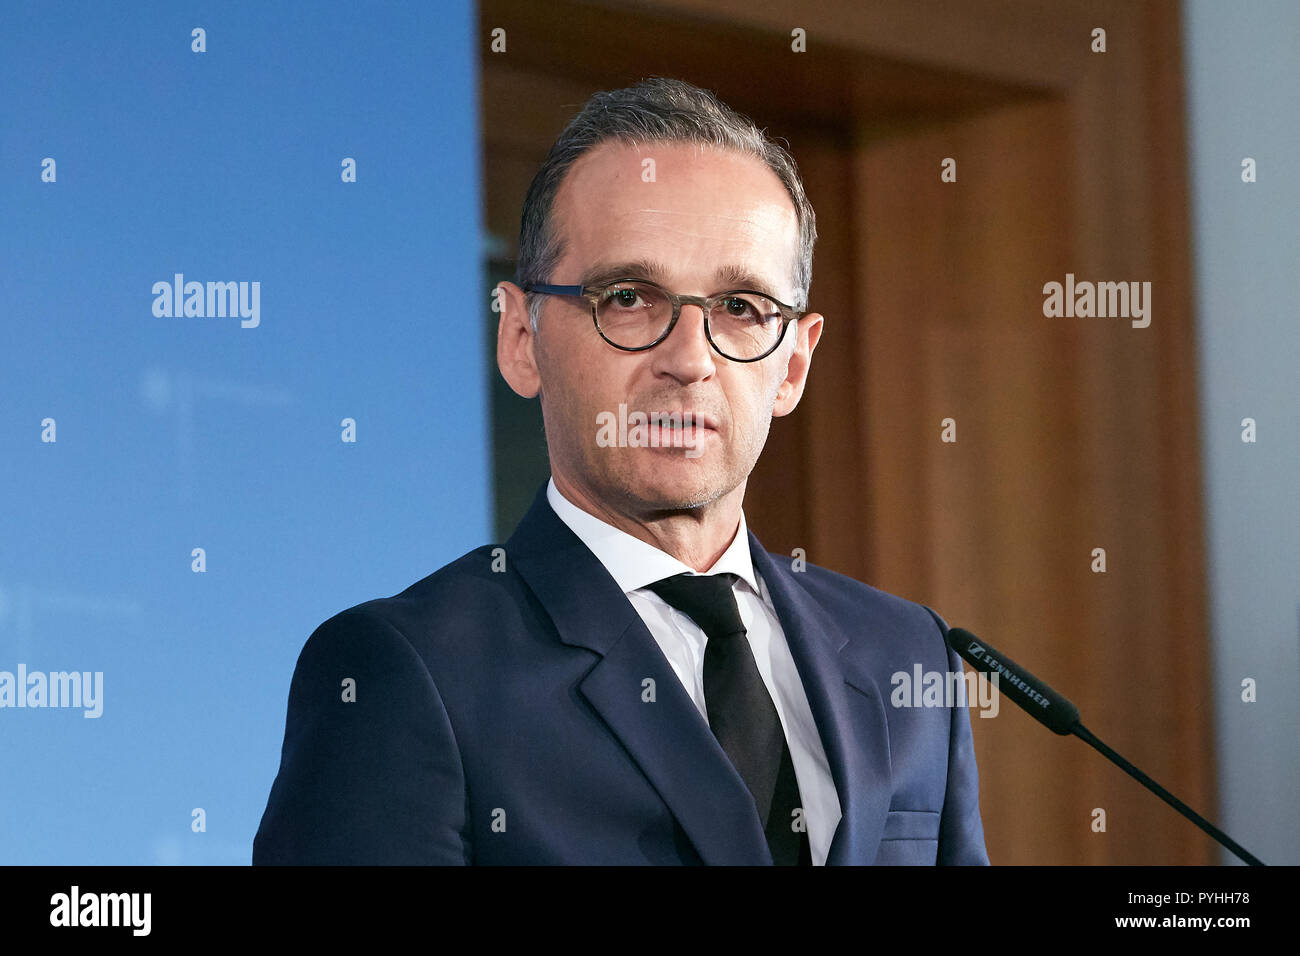 Berlín, Alemania - El Ministro Federal de Relaciones Exteriores Heiko Maas. Foto de stock